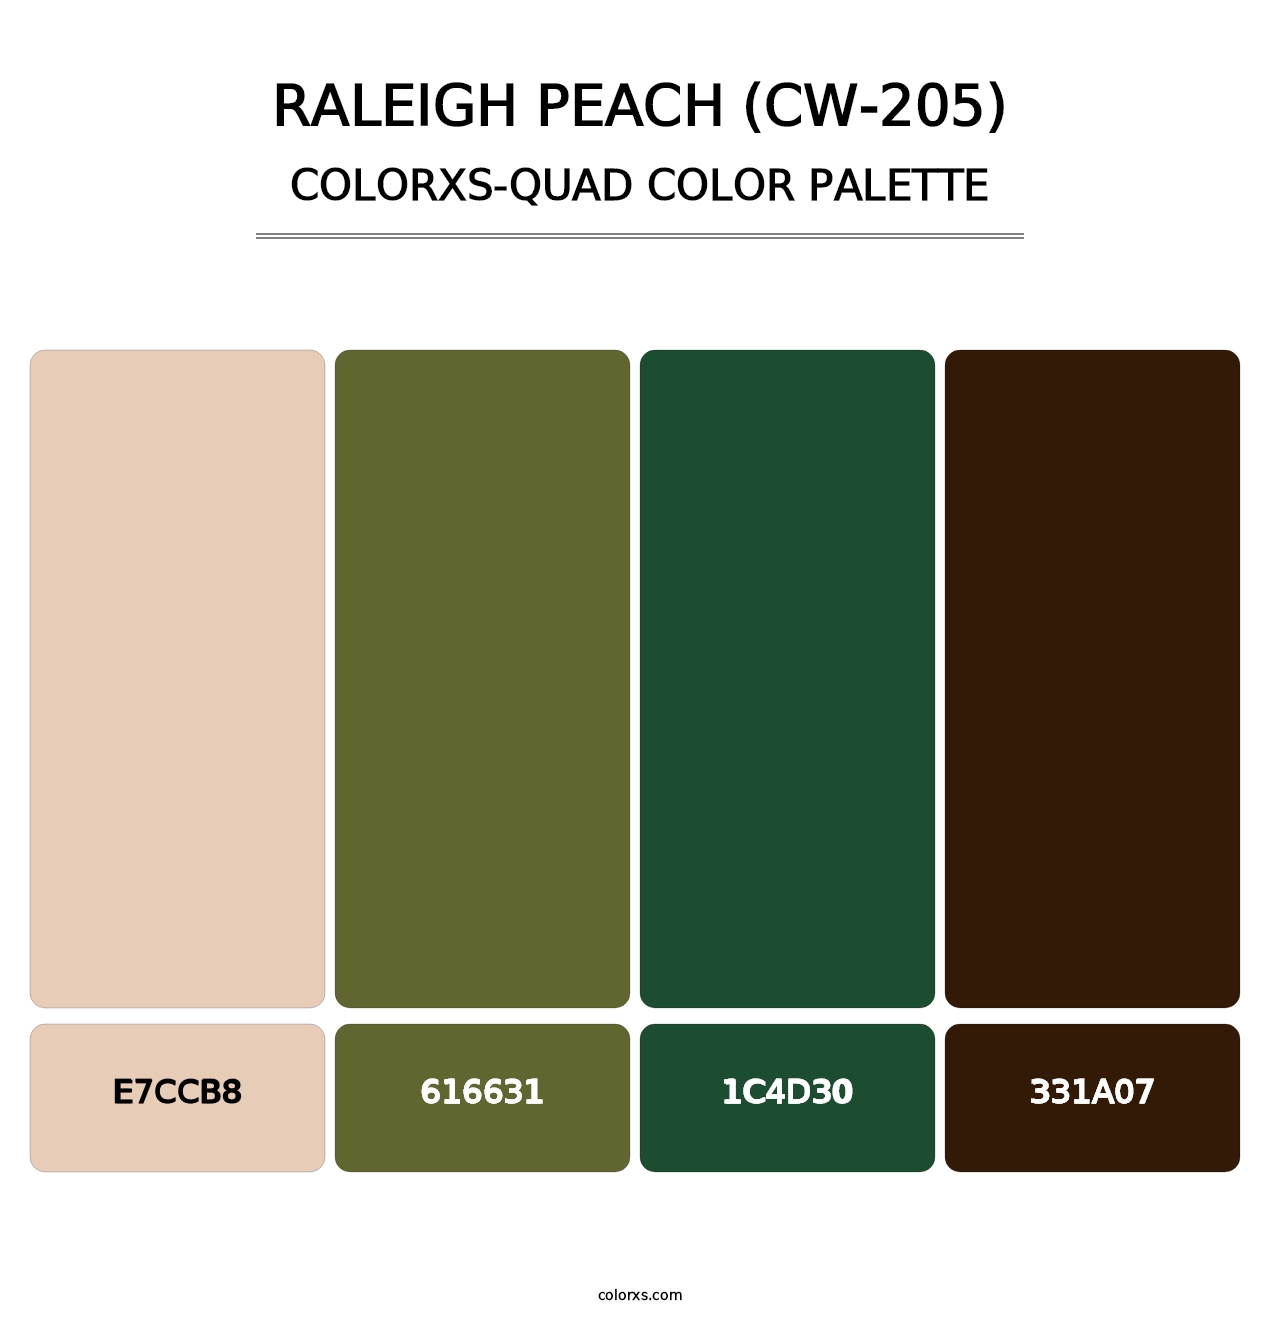 Raleigh Peach (CW-205) - Colorxs Quad Palette